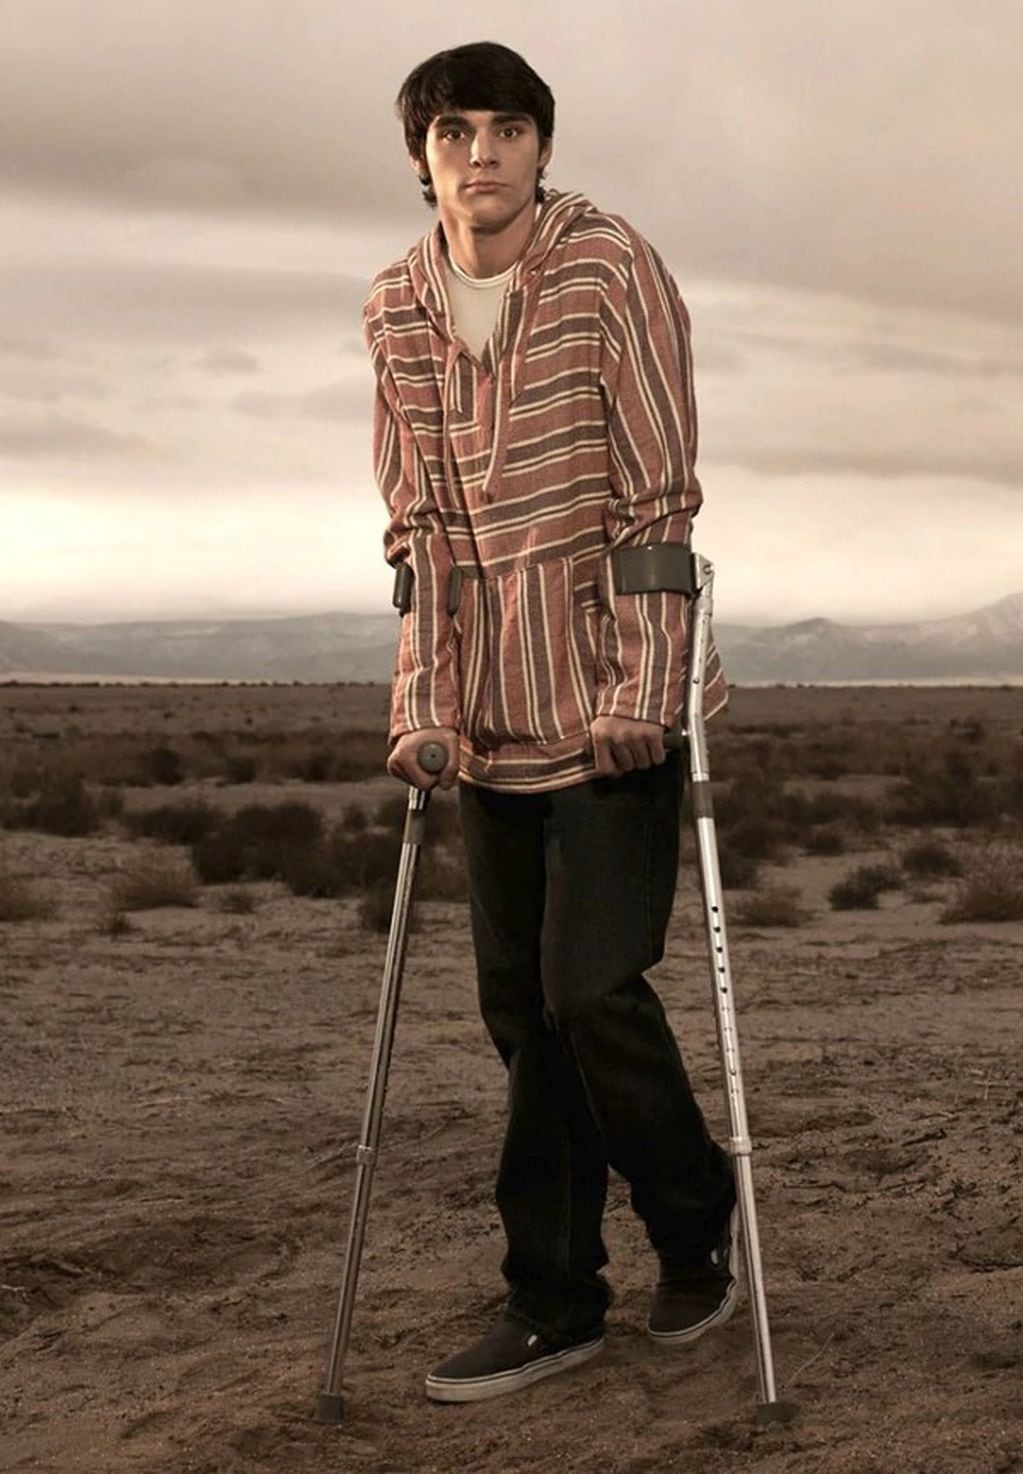 Roy Frank RJ Mitte III es un actor estadounidense conocido por su papel como Walter White Jr. en la serie Breaking Bad que tiene parálisis cerebral leve (Foto: Afiche Breaking Bad)